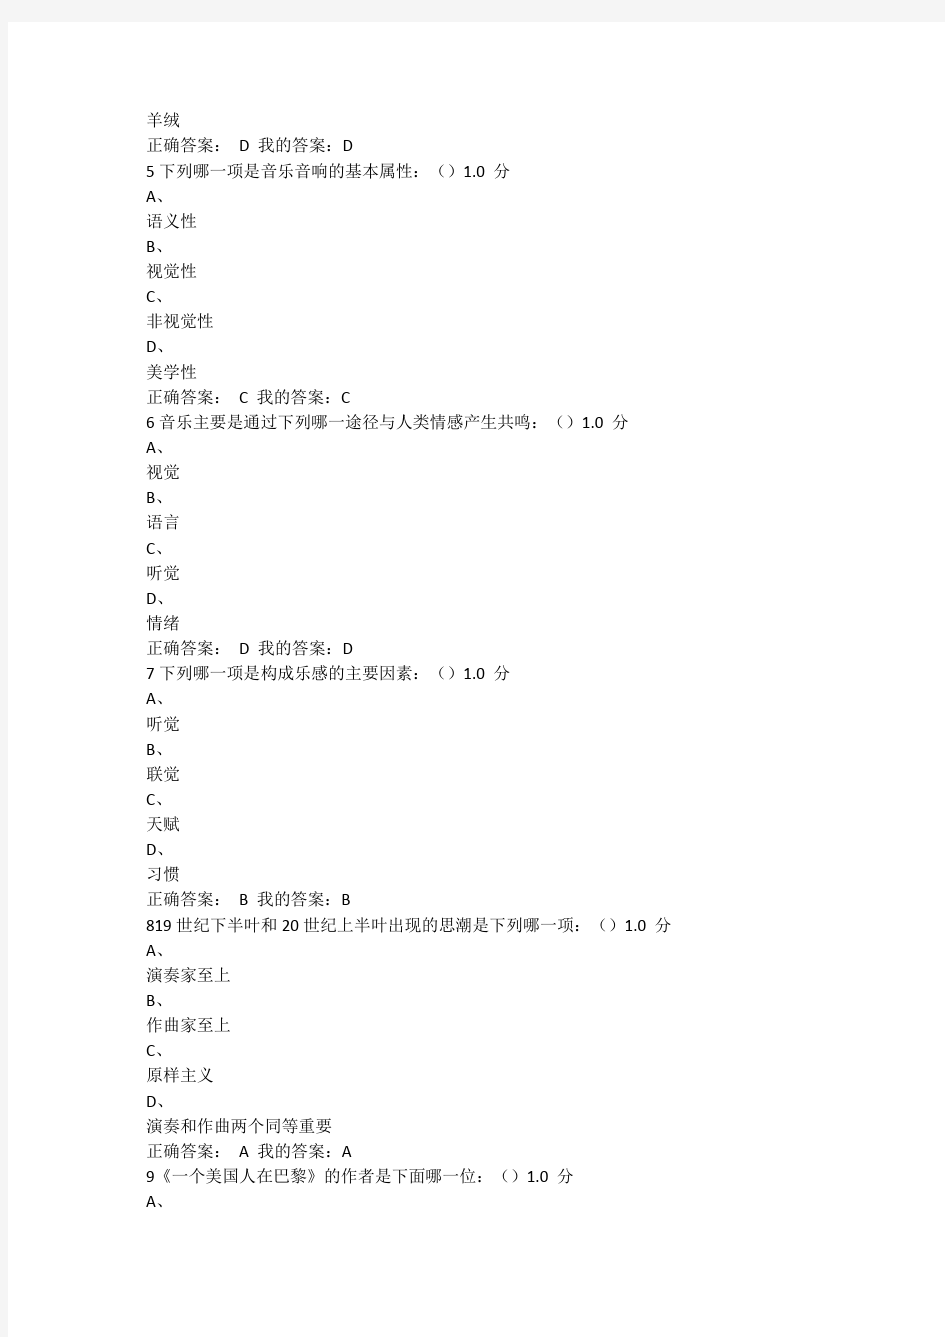 音乐鉴赏尔雅周海宏考试答案2015.12.09最新版的哦~